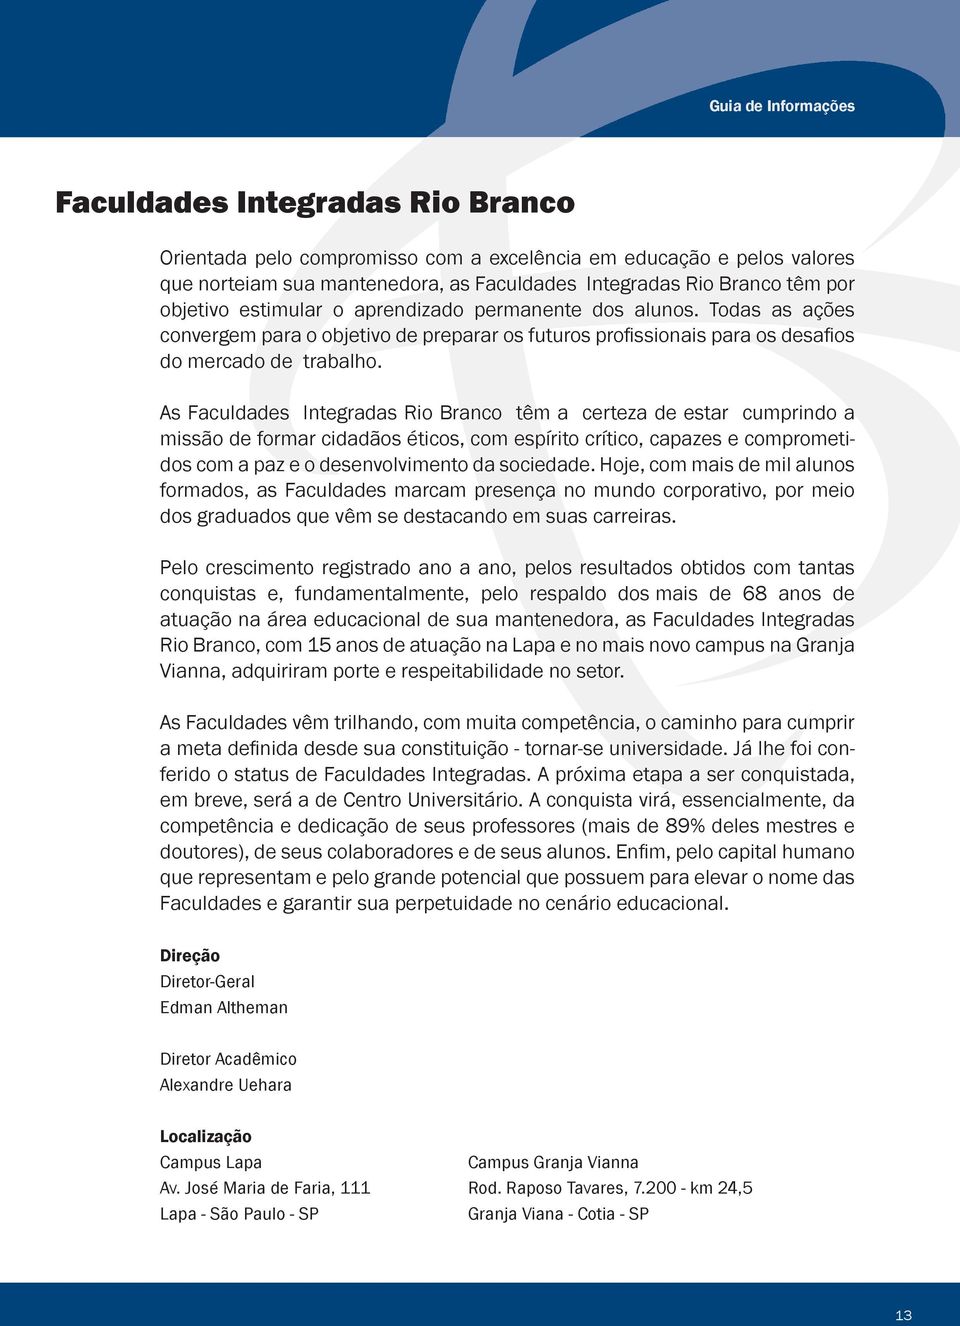 As Faculdades Integradas Rio Branco têm a certeza de estar cumprindo a missão de formar cidadãos éticos, com espírito crítico, capazes e comprometidos com a paz e o desenvolvimento da sociedade.